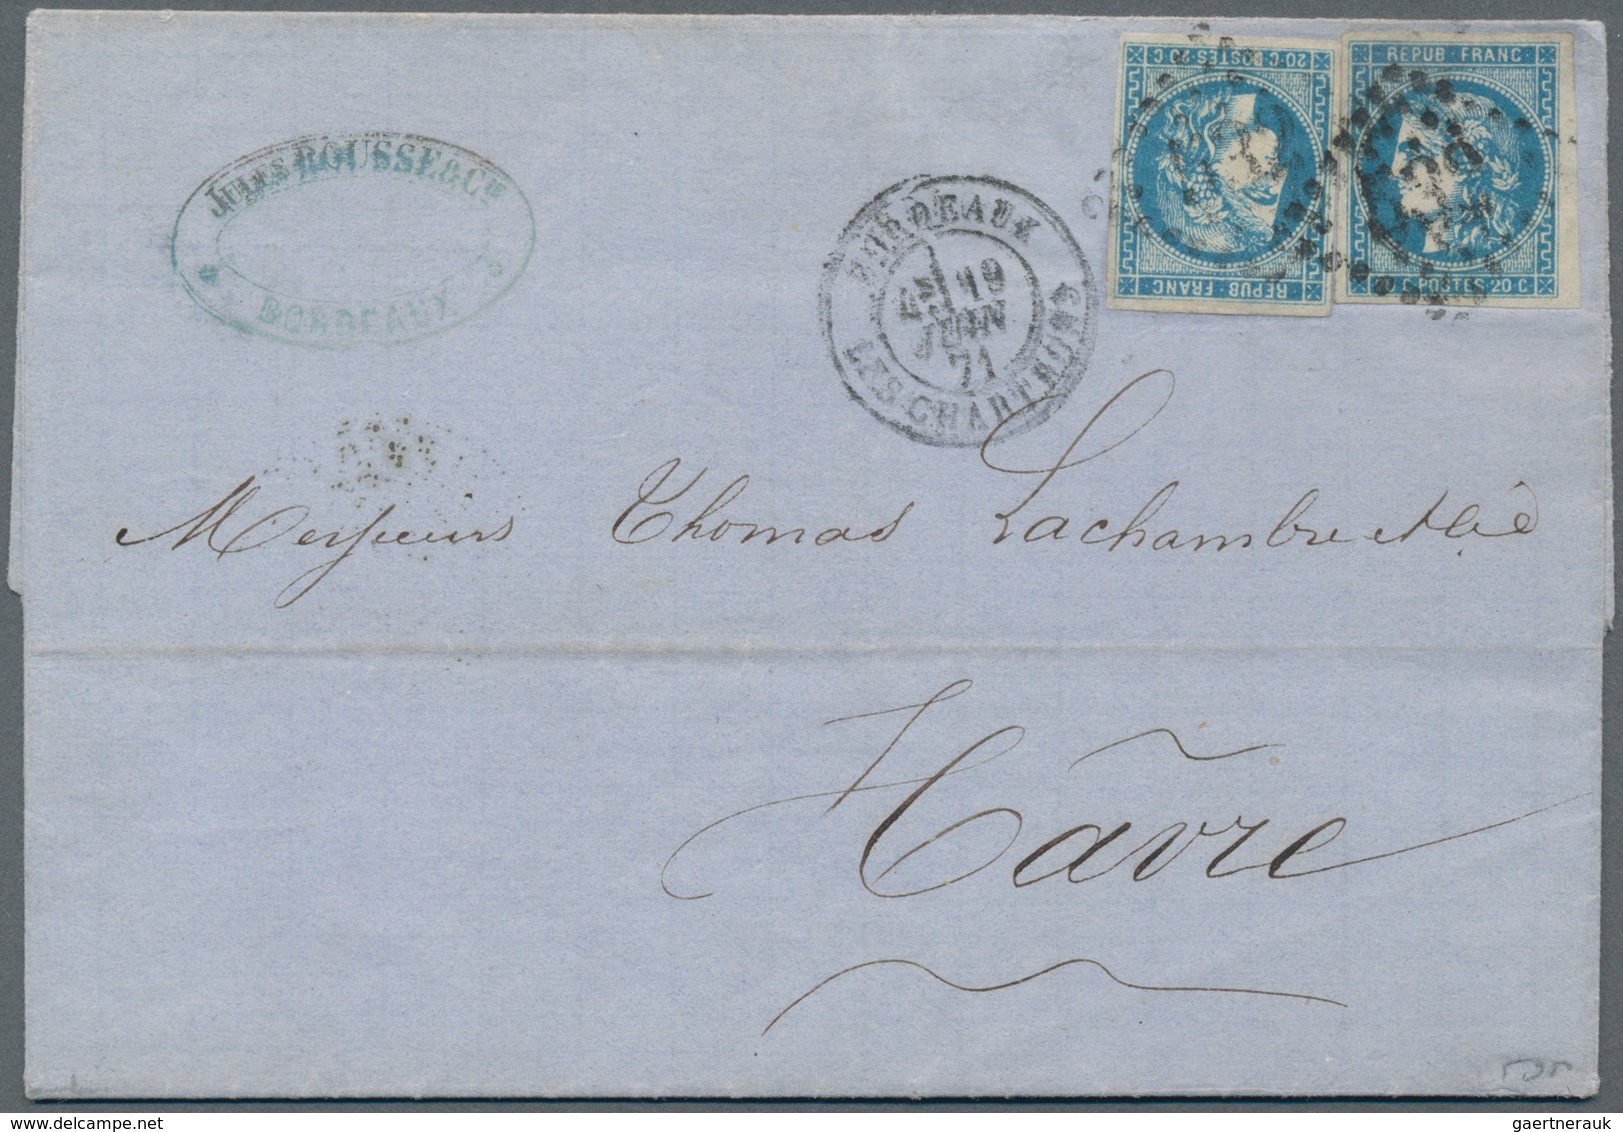 Europa: ab 1870, schöner Briefposten von ca. 180 Belegen "Klassik - Semiklassik", dabei gute Schweiz